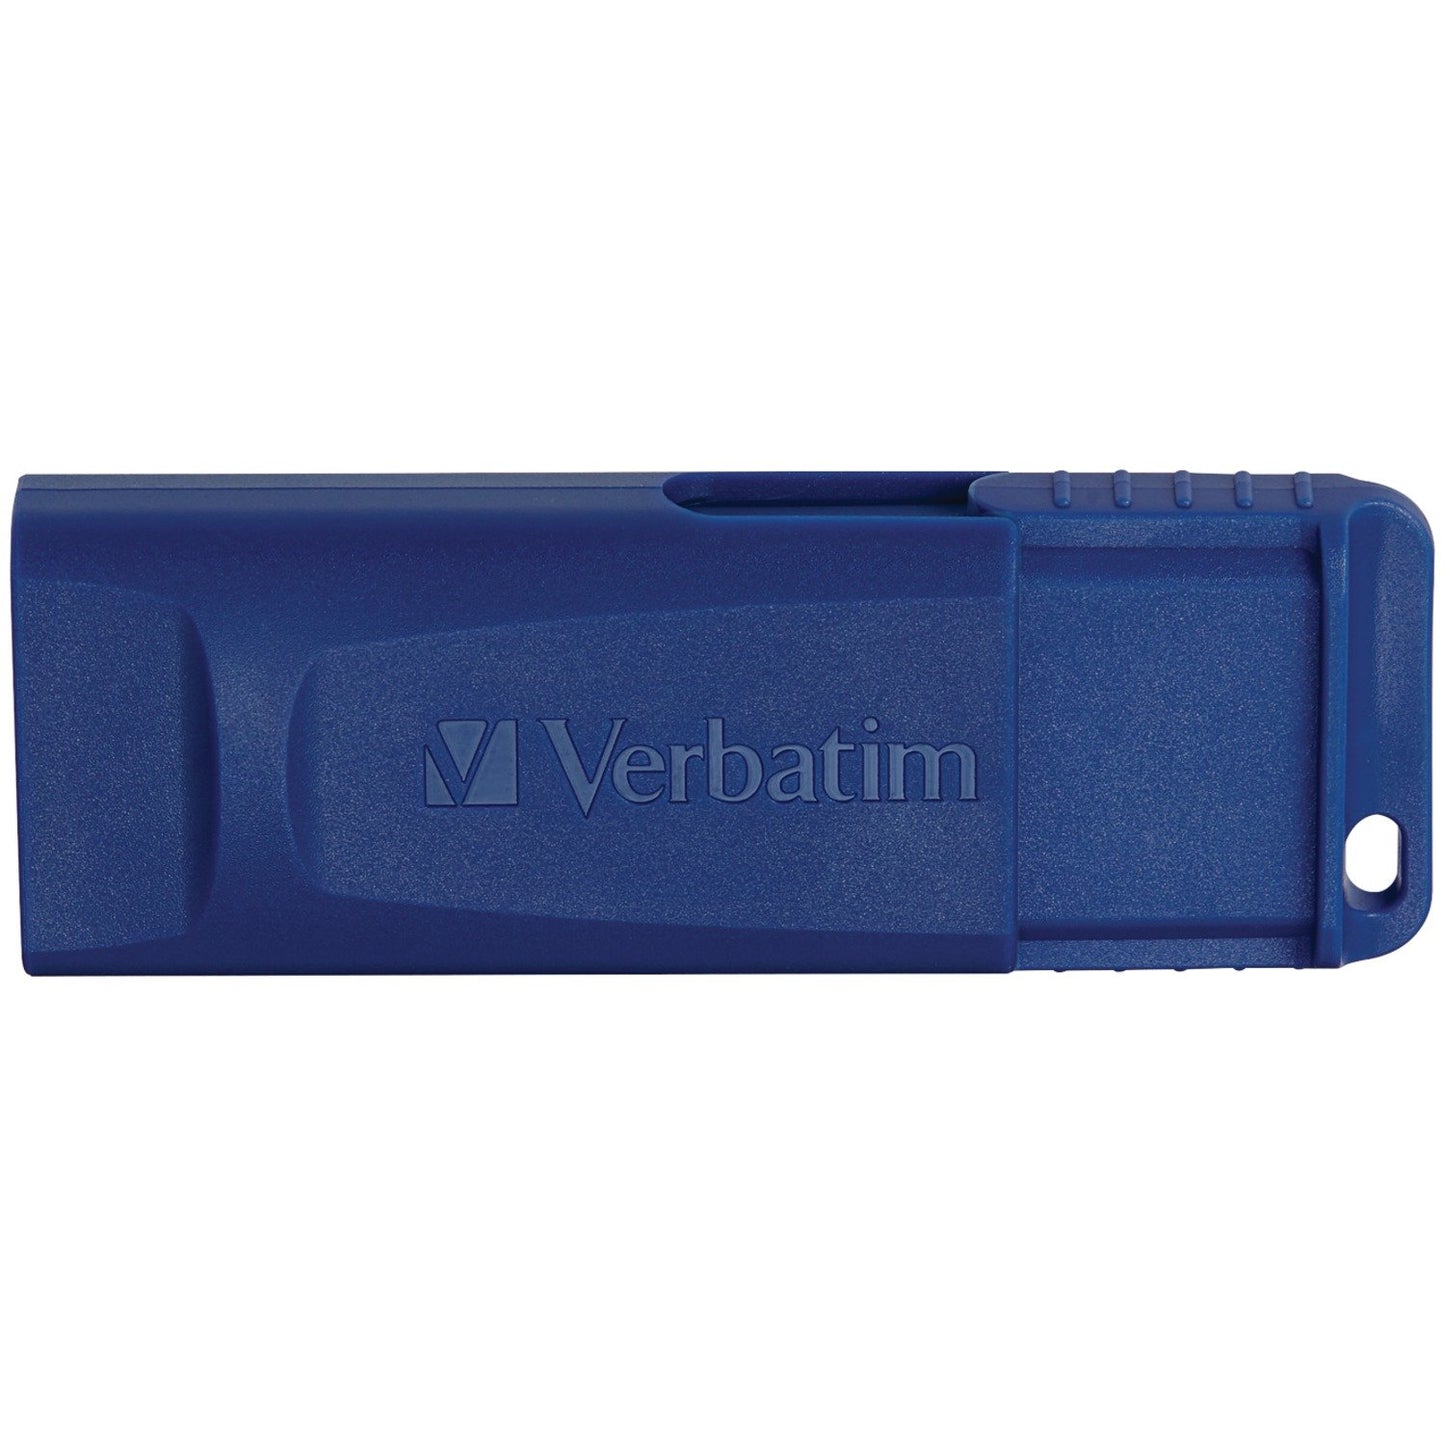 VERBATIM 97275 USB Flash Drive (16GB)